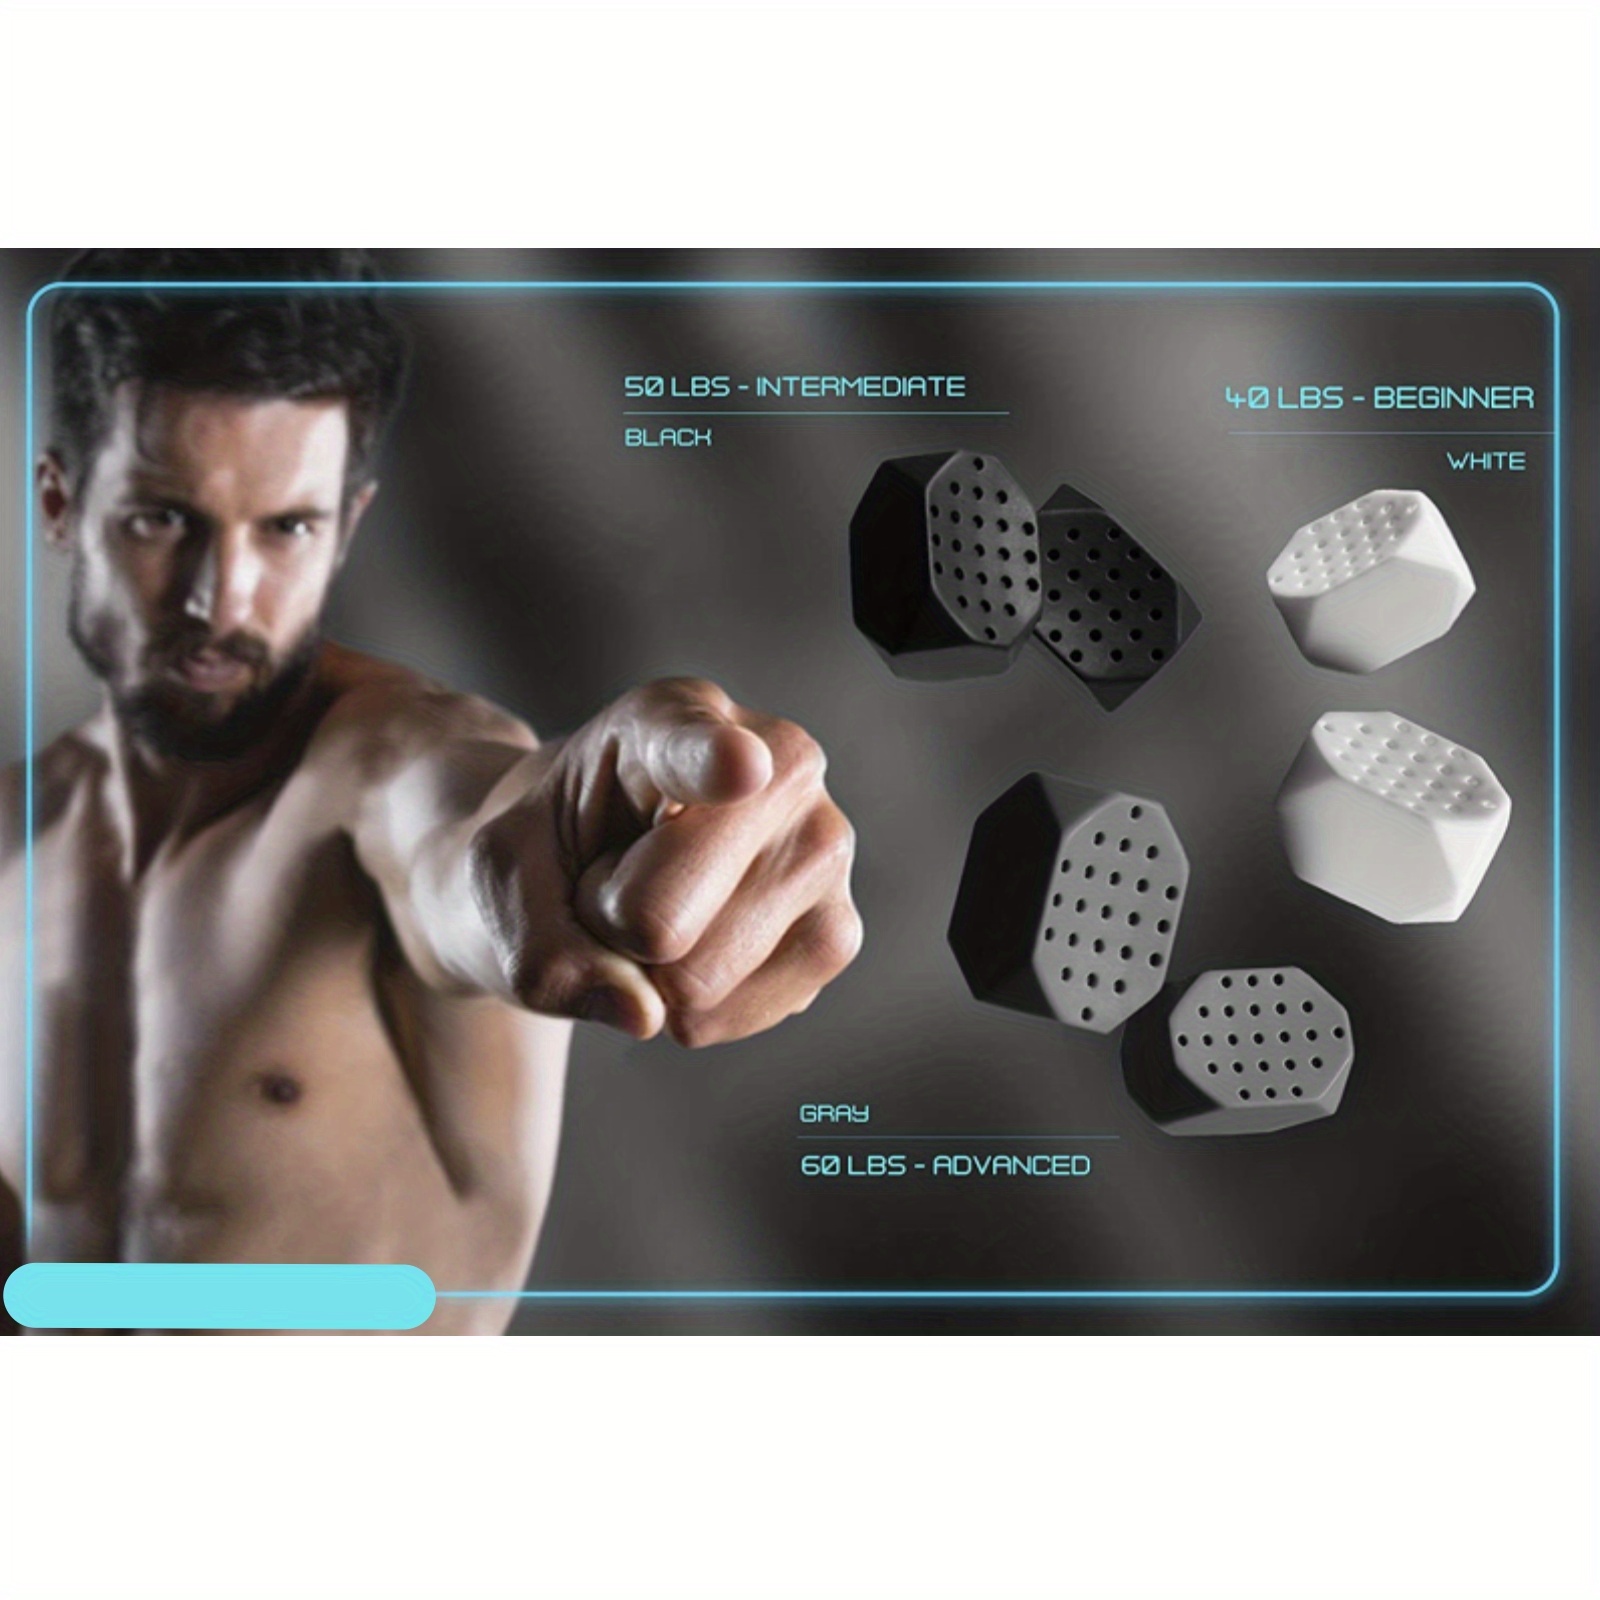 Ejercitador de mandíbula para hombres y mujeres – 3 niveles de resistencia  (6 piezas) tabletas de silicona para ejercitar la mandíbula – Potente